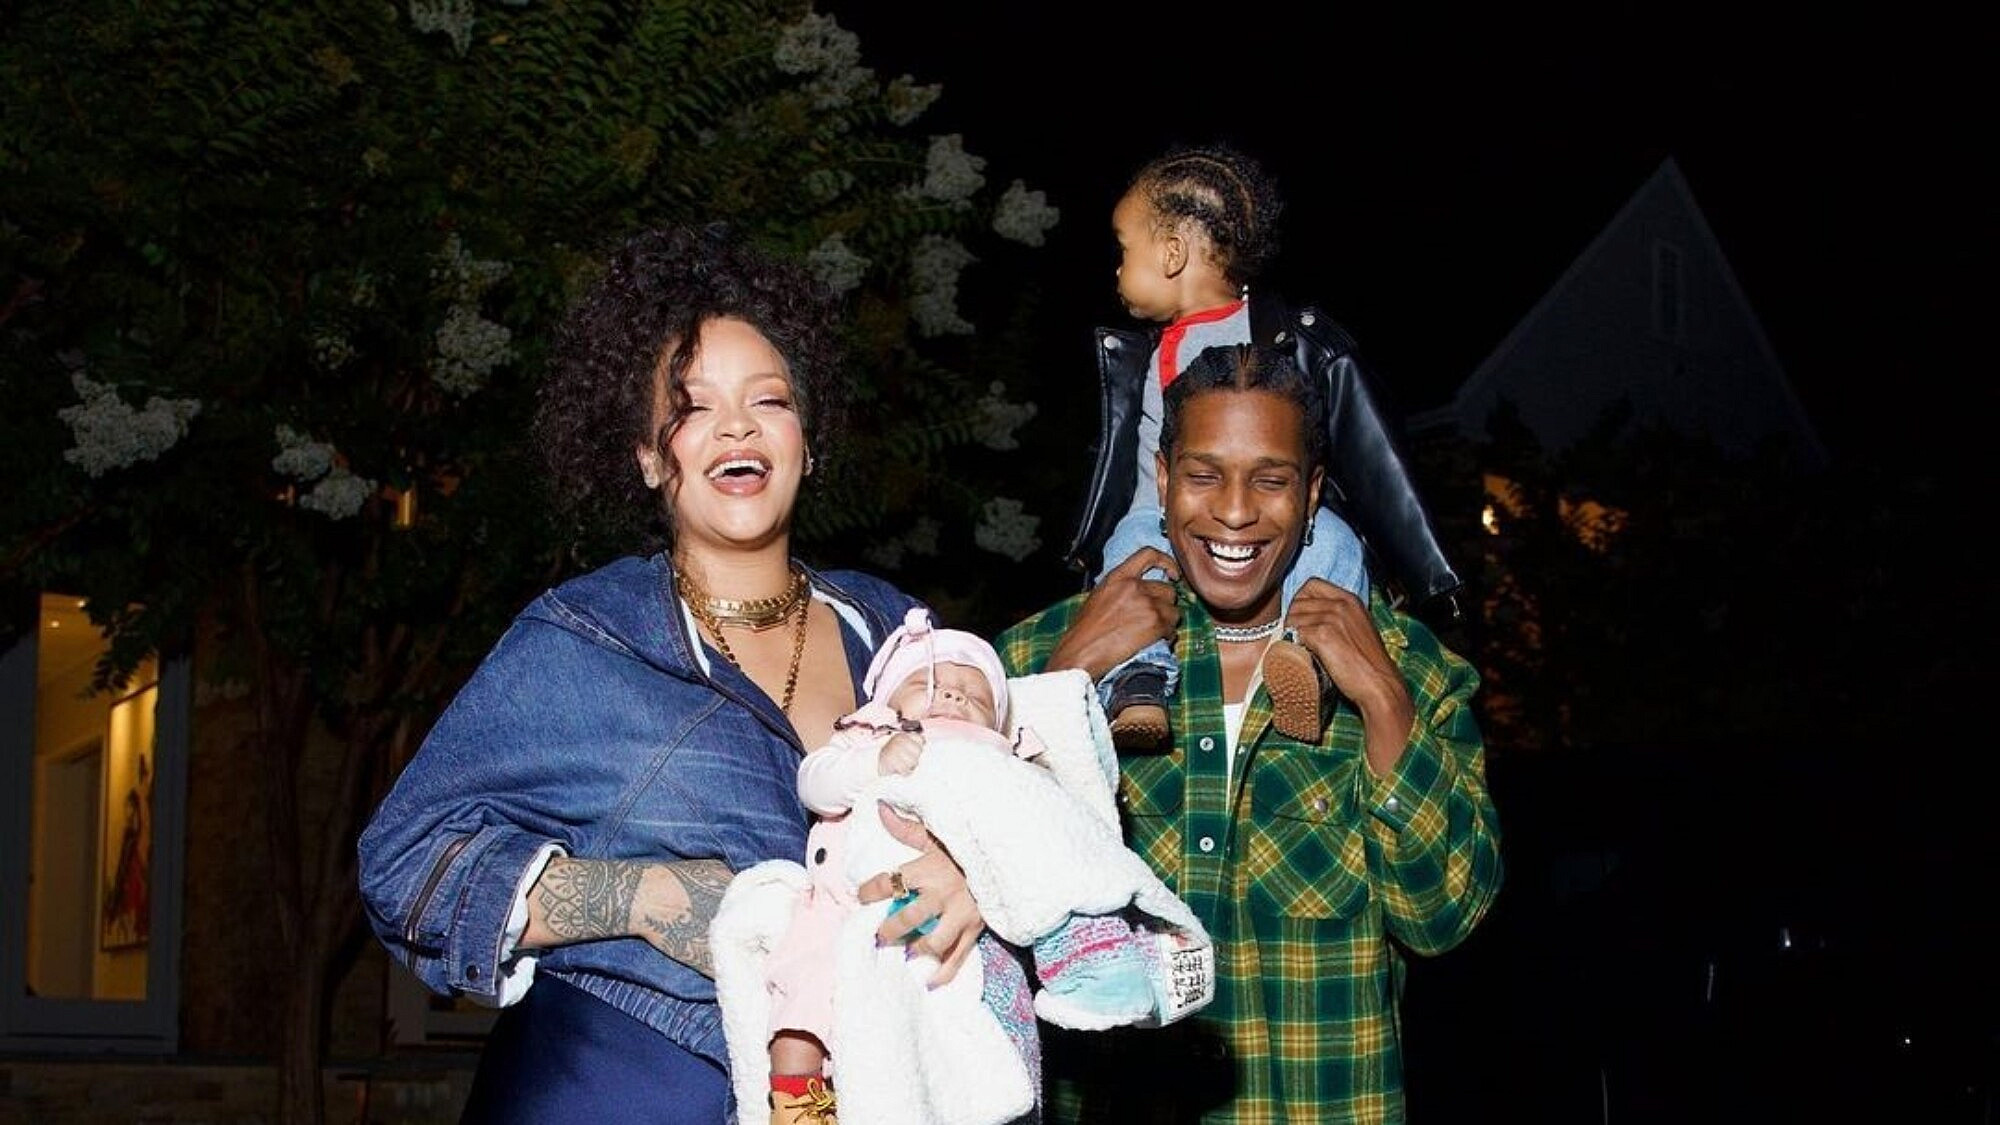 ריהאנה עם בן זוגה והילדים | צילום: אינסטגרם glamourmag@